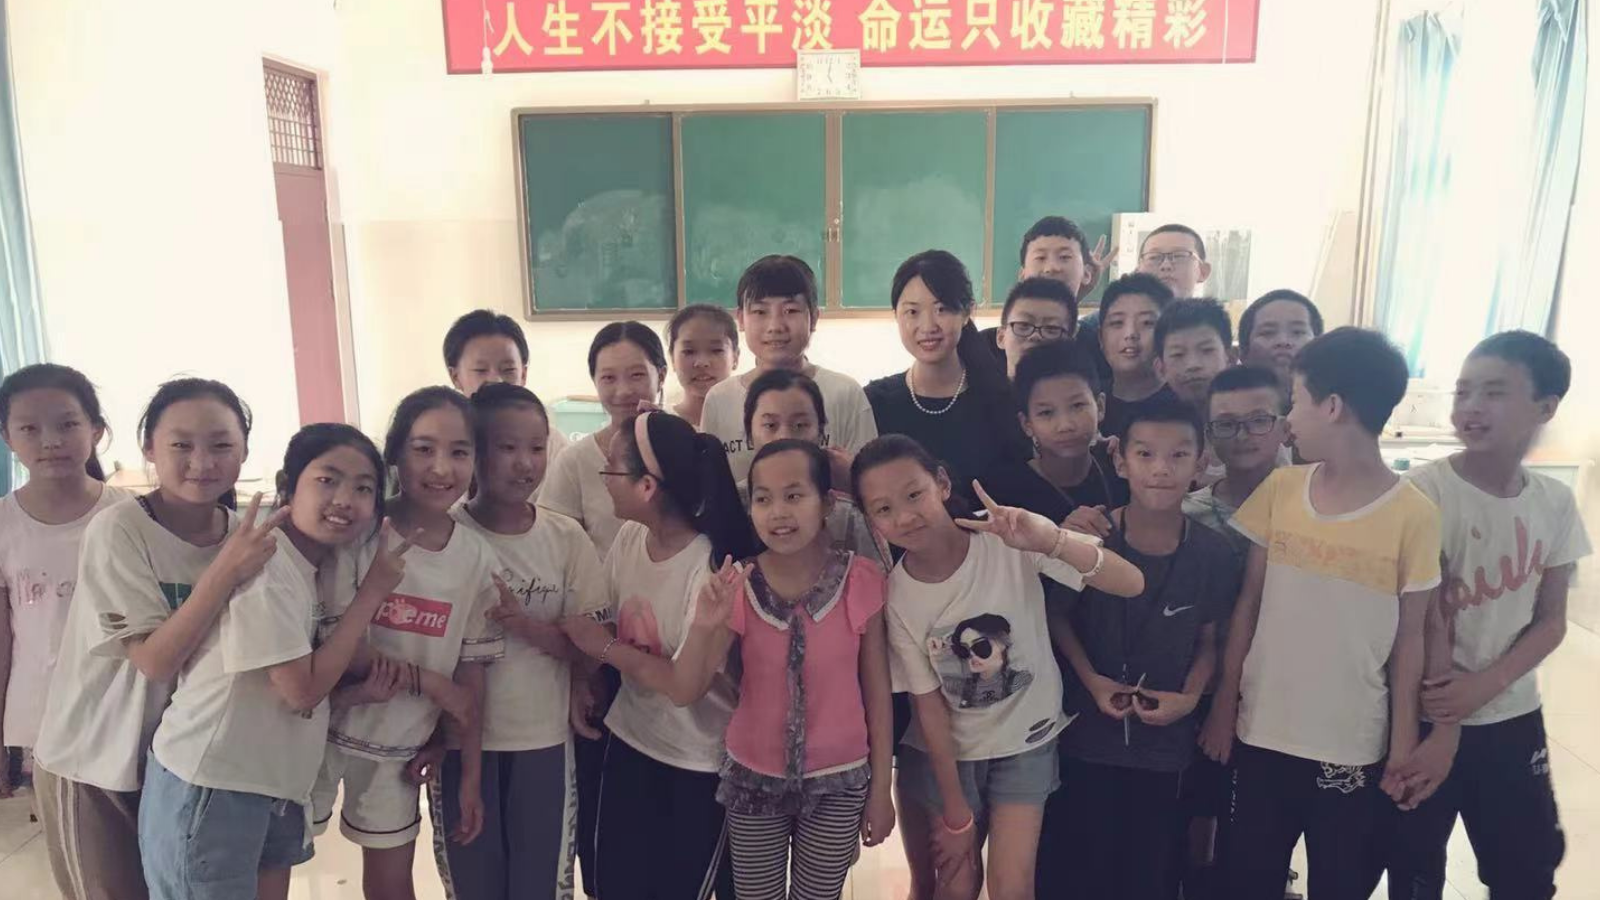 At visionary education summer camp in rural China